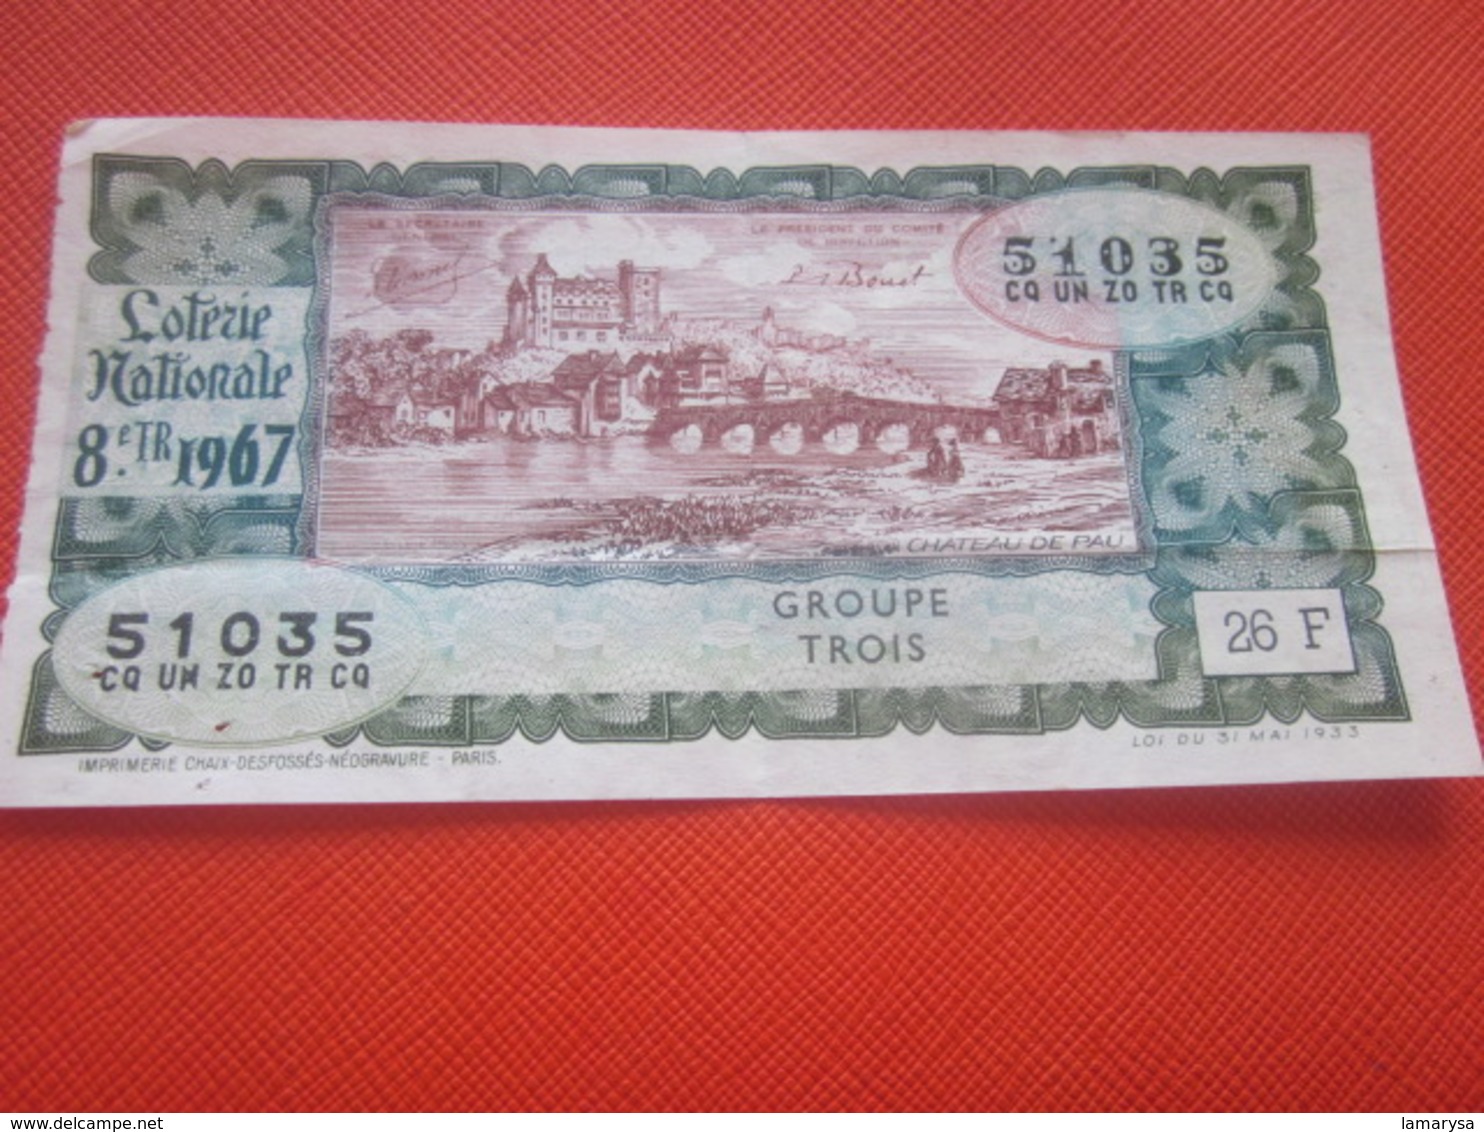 CHÂTEAU DE PAU --- Année 1967-Billet De La Loterie Nationale - Billets De Loterie